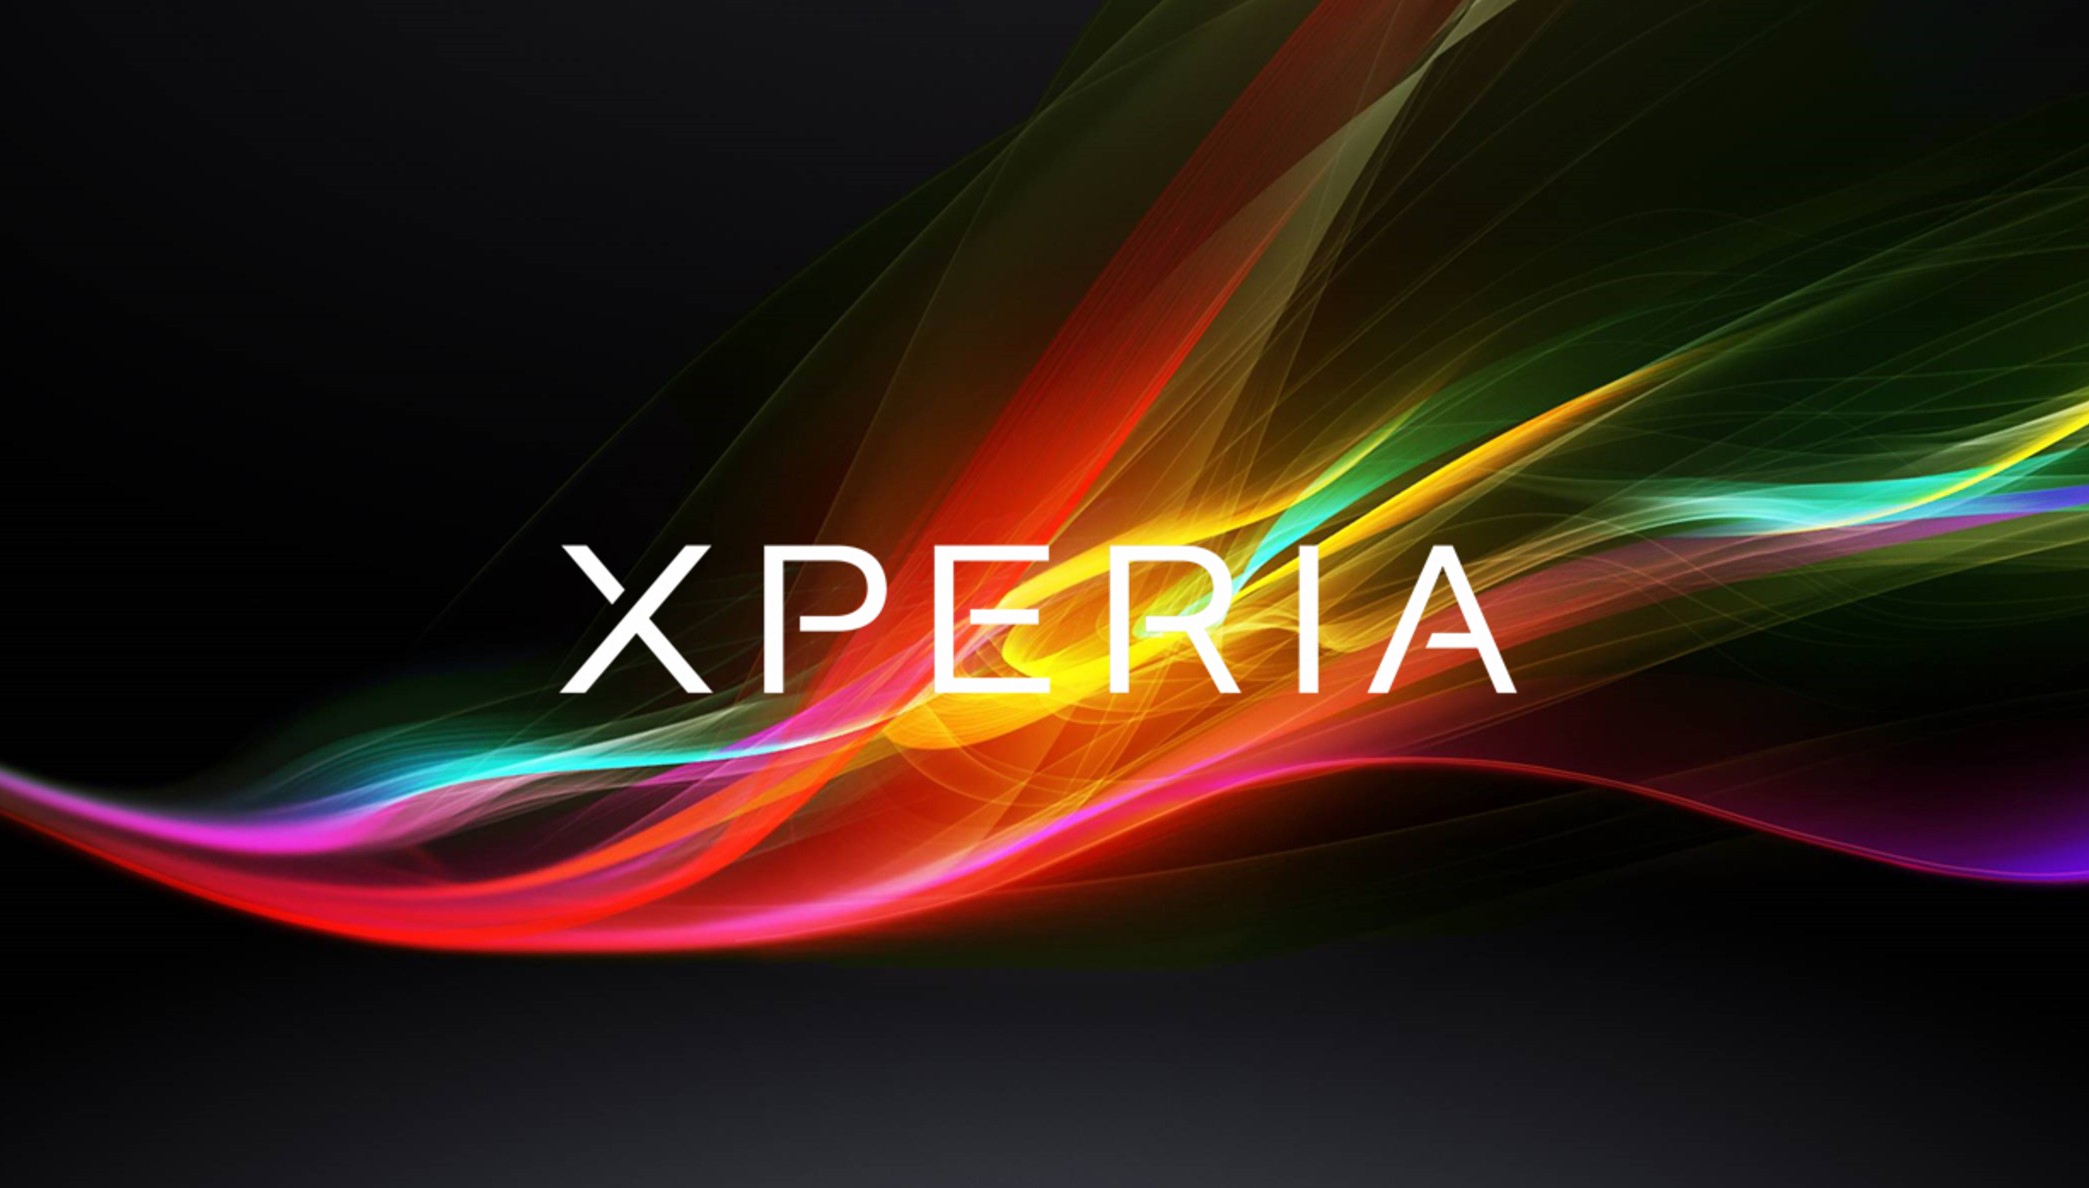 Xperia - HD Wallpaper 